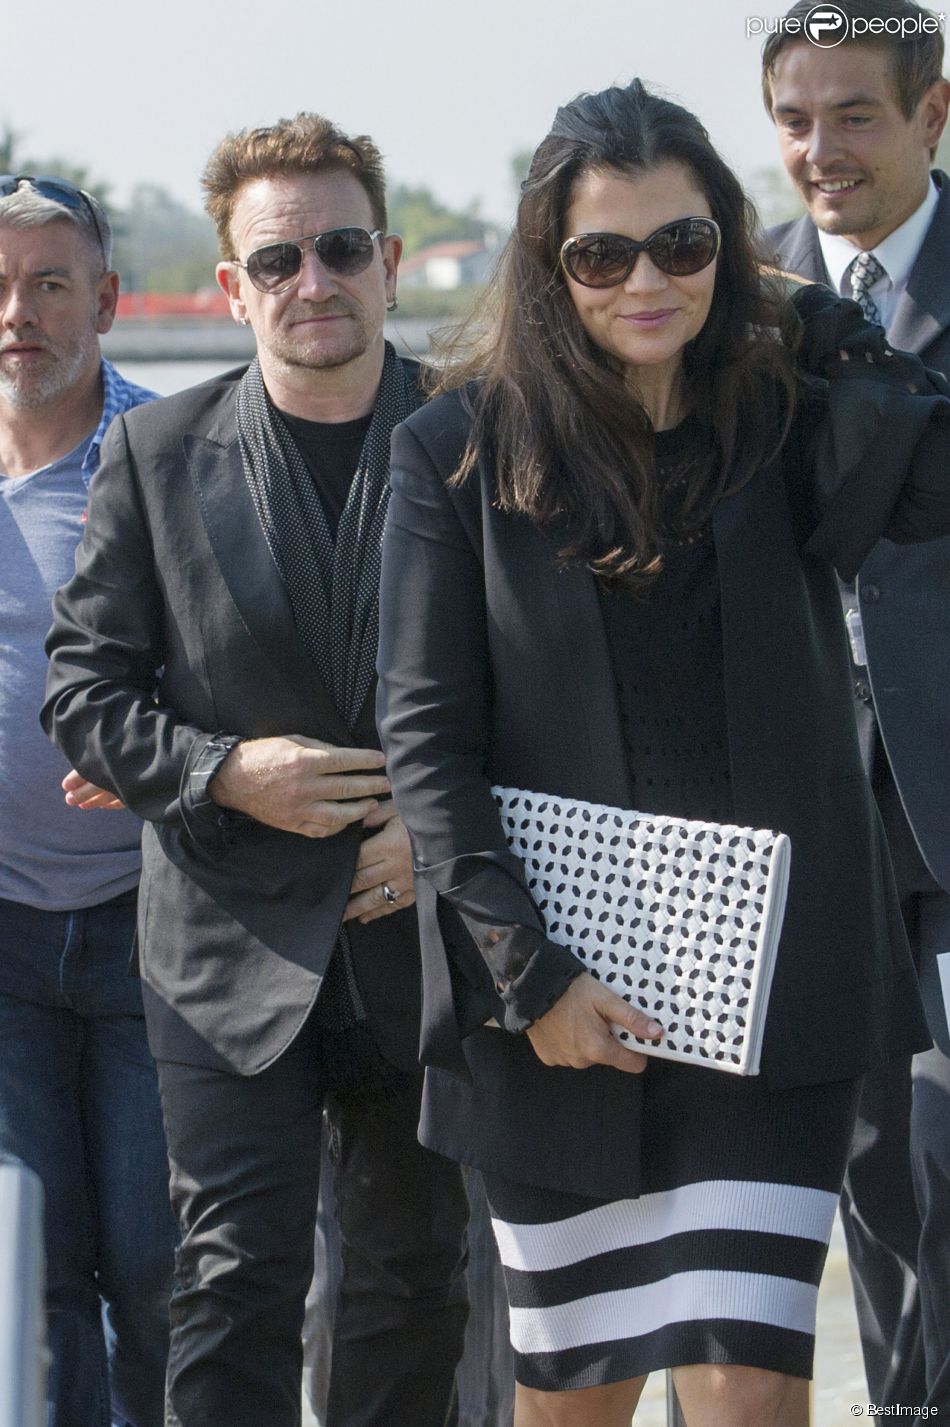  Le chanteur Bono et sa femme Ali Hewson quittent Venise, le 29 septembre 2014 apr&amp;egrave;s avoir assist&amp;eacute; ce week-end au mariage de George Clooney et sa femme Amal Alamuddin. 